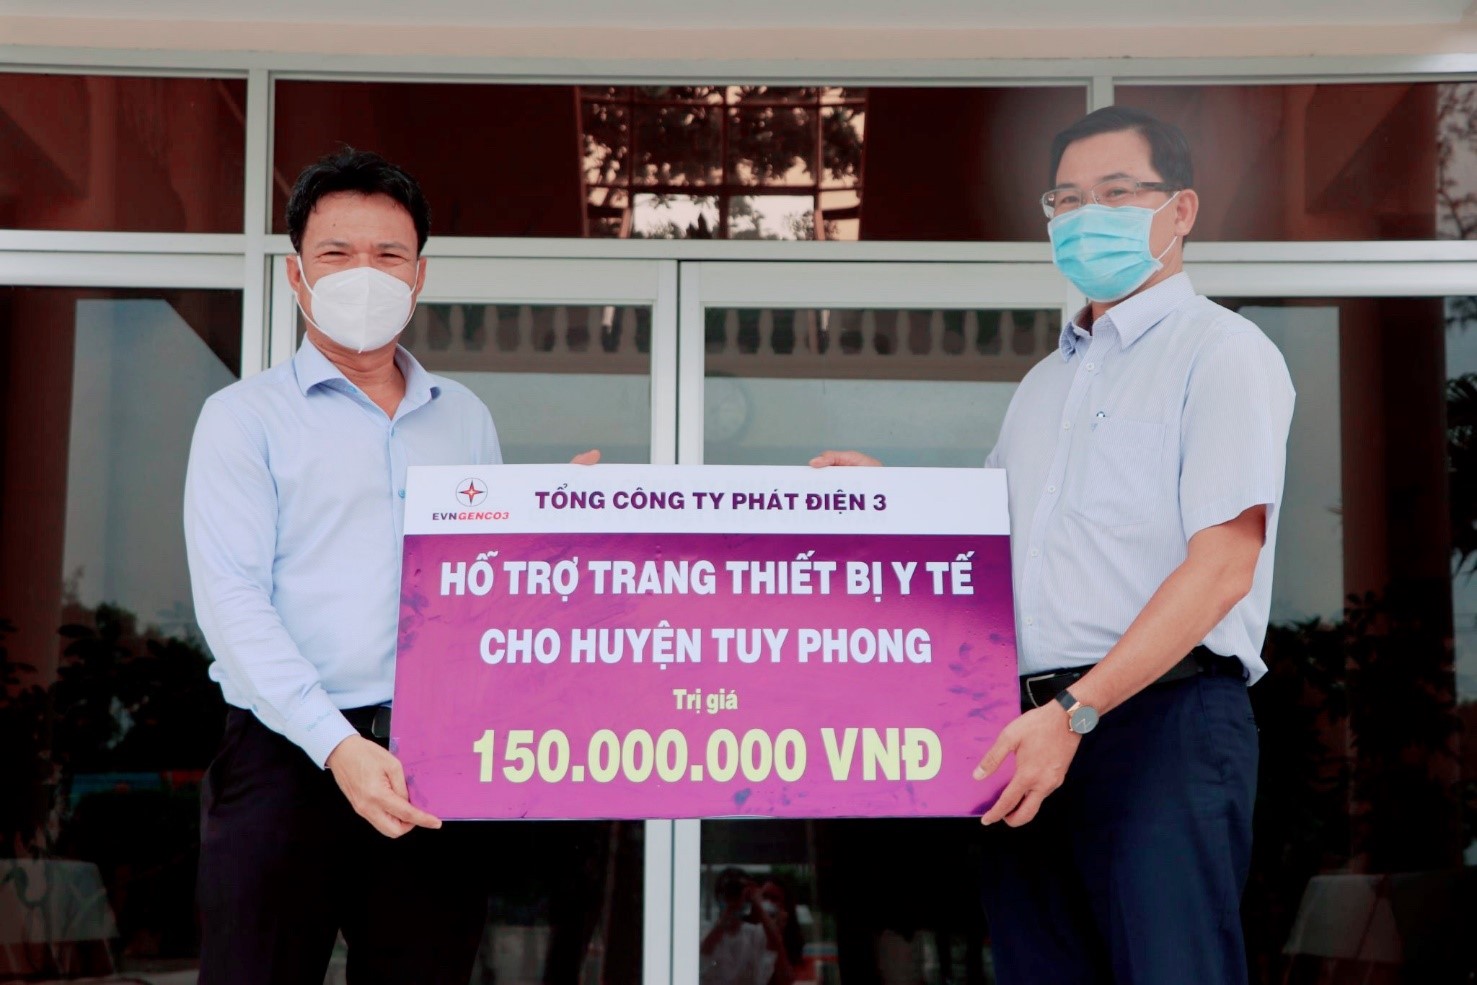 EVNGENCO3 trao tặng trang thiết bị y tế hỗ trợ công tác phòng chống dịch COVID-19 huyện Tuy Phong